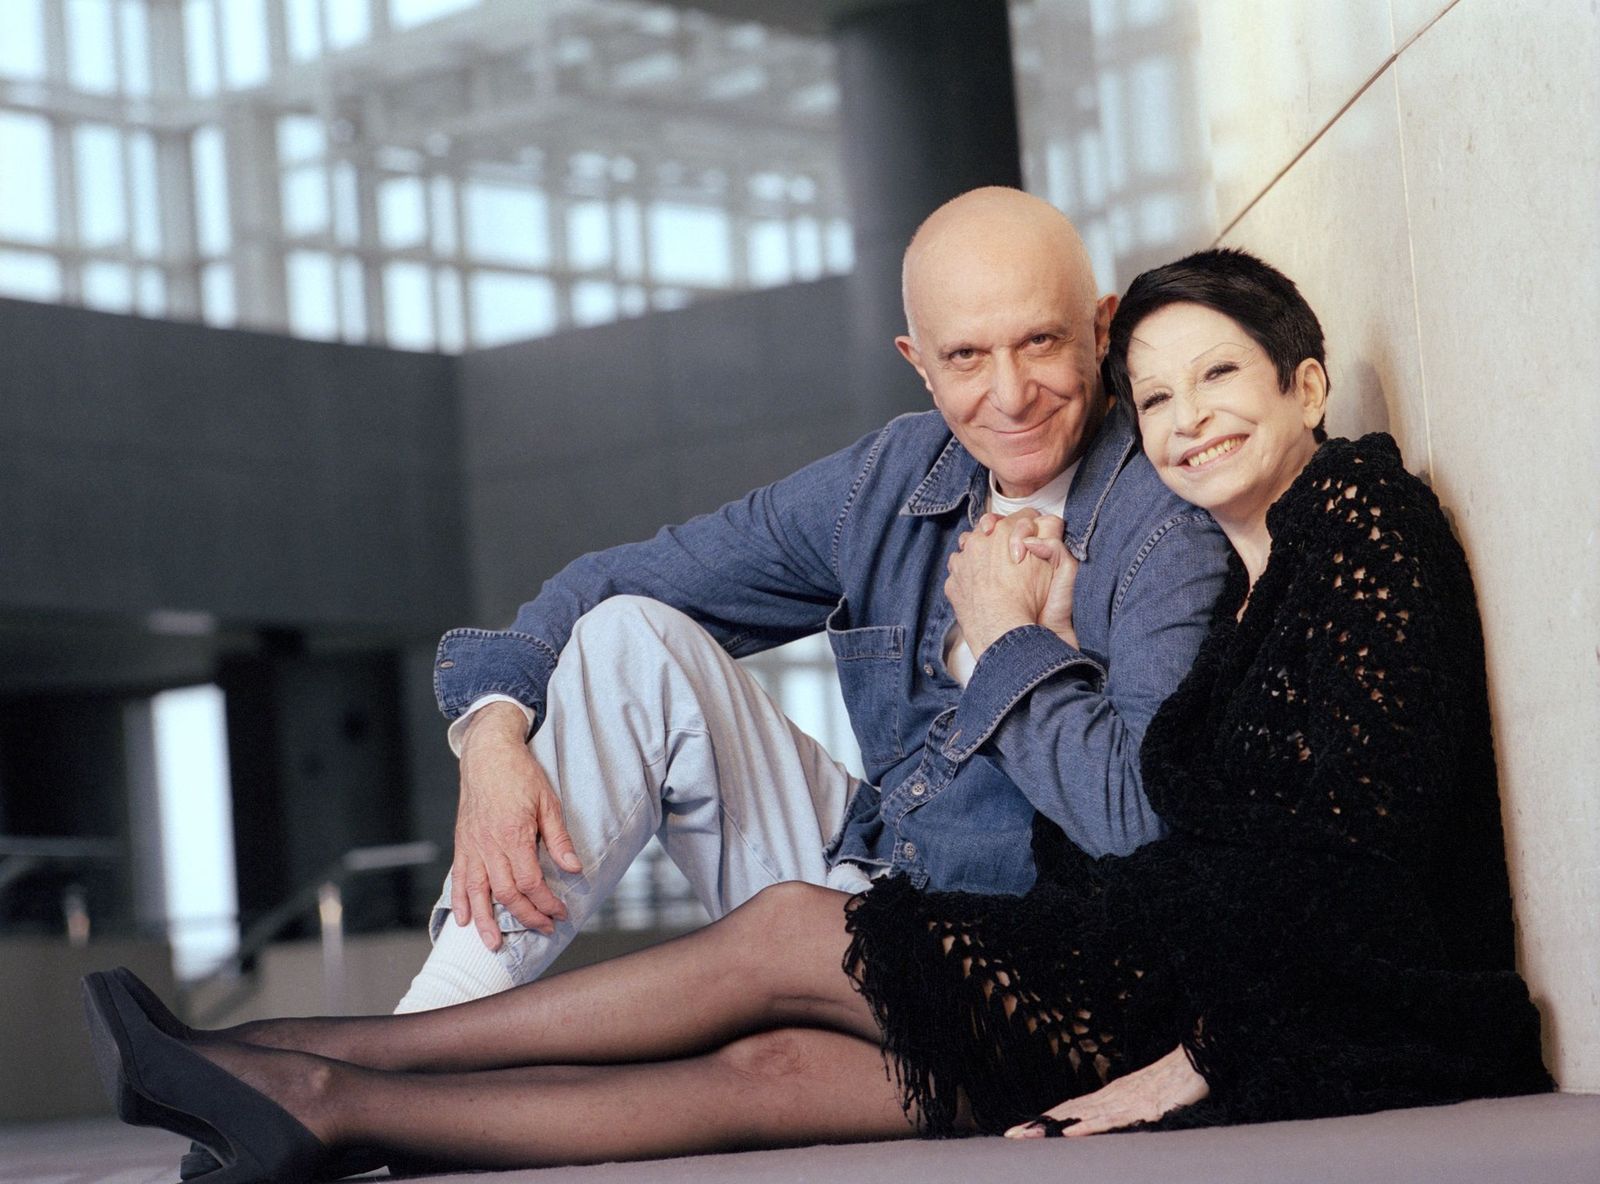 La danseuse de ballets Zizi Jeanmaire et son mari Roland Petit | Photo : Getty Images